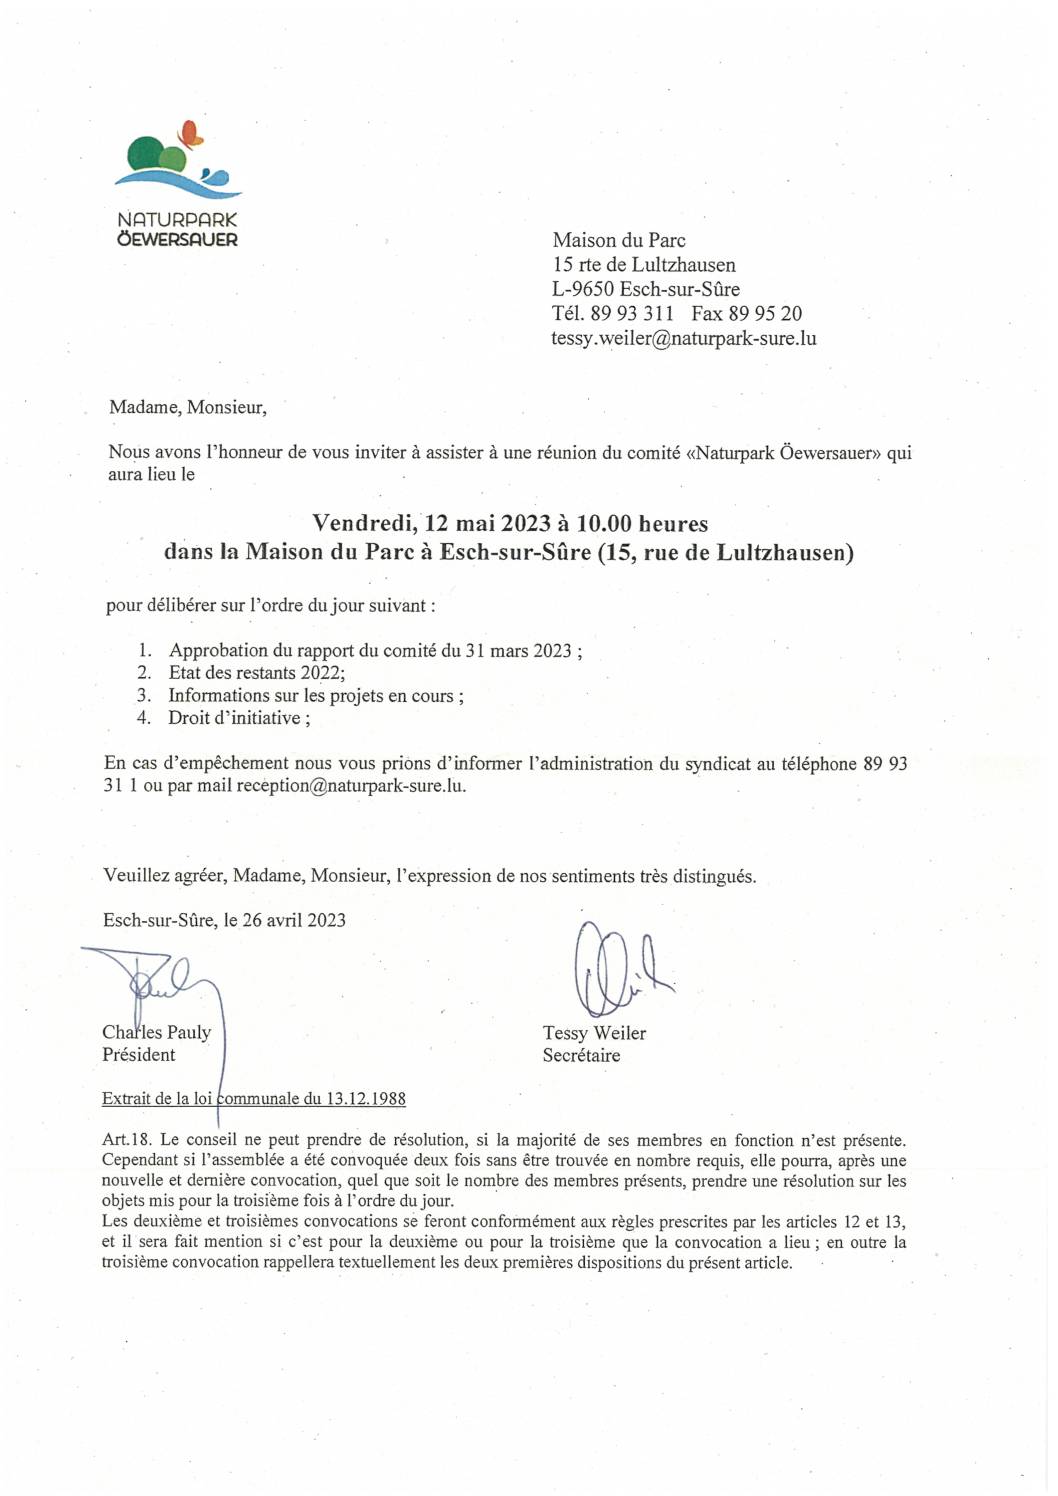 2023.05.03_Convocation comité Naturpark - Réunion du 12.05.2023